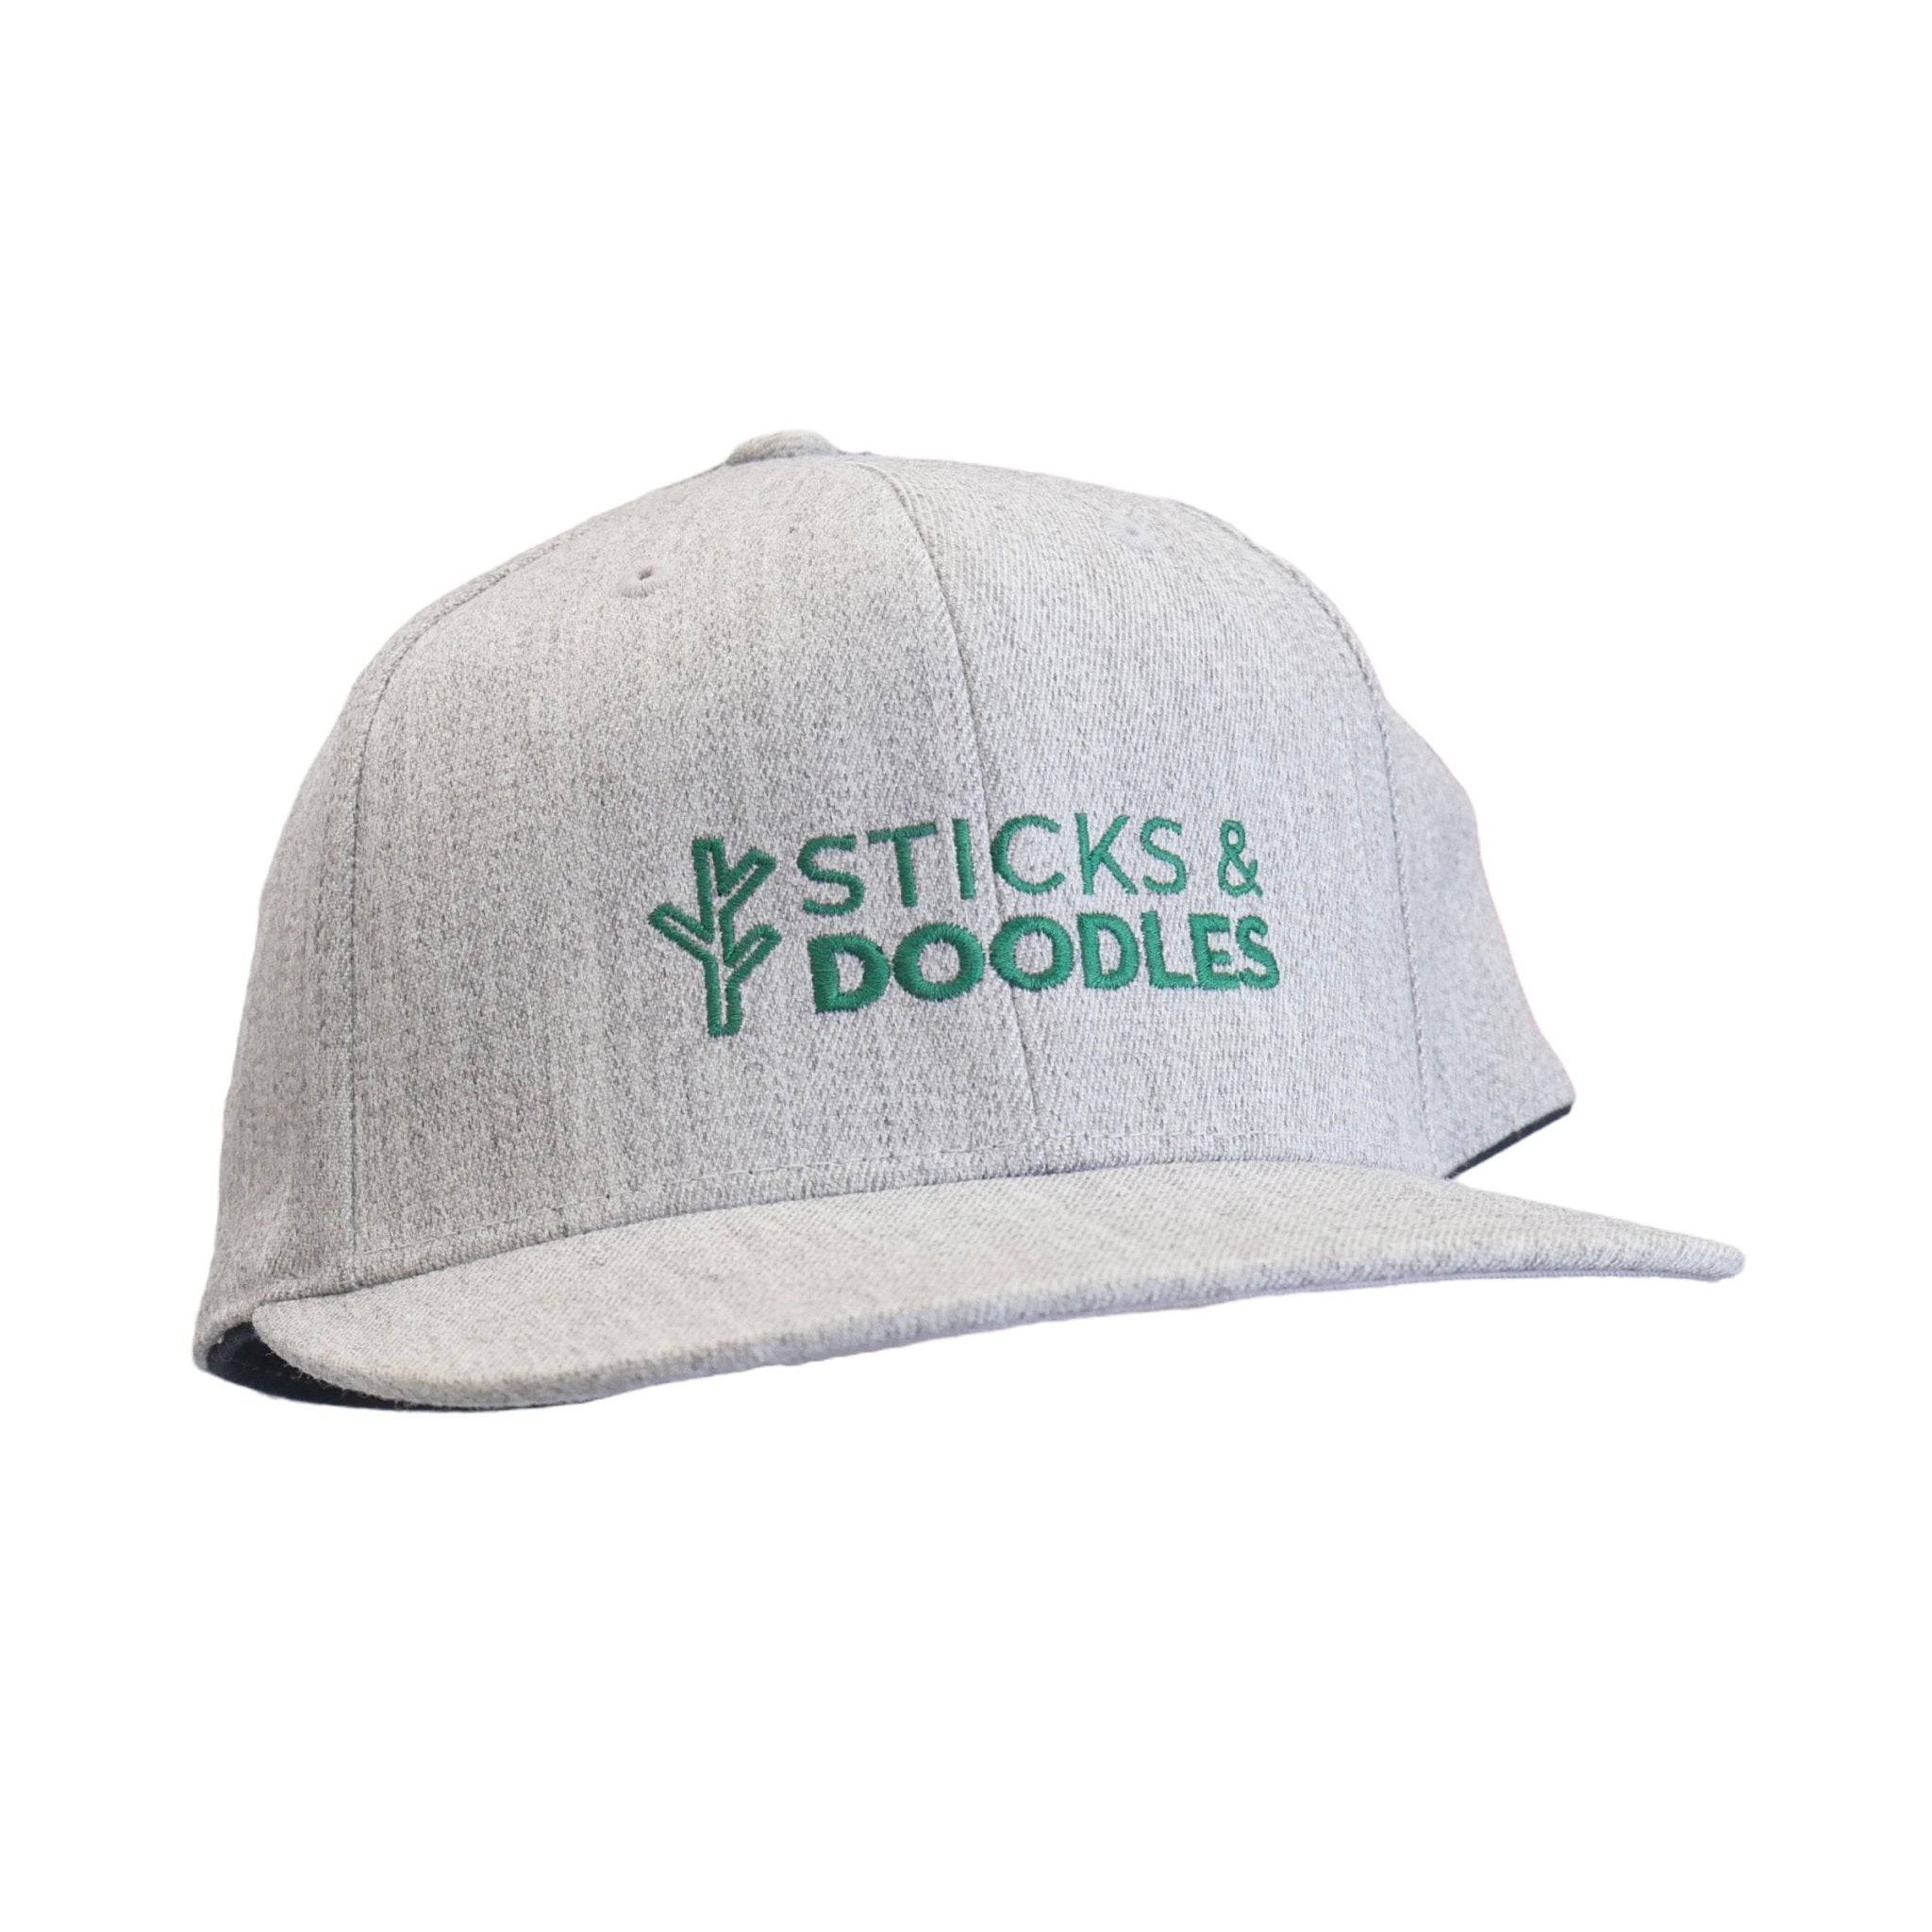 Sticks & Doodles Hat with Embroidered Logo - Sticks & Doodles